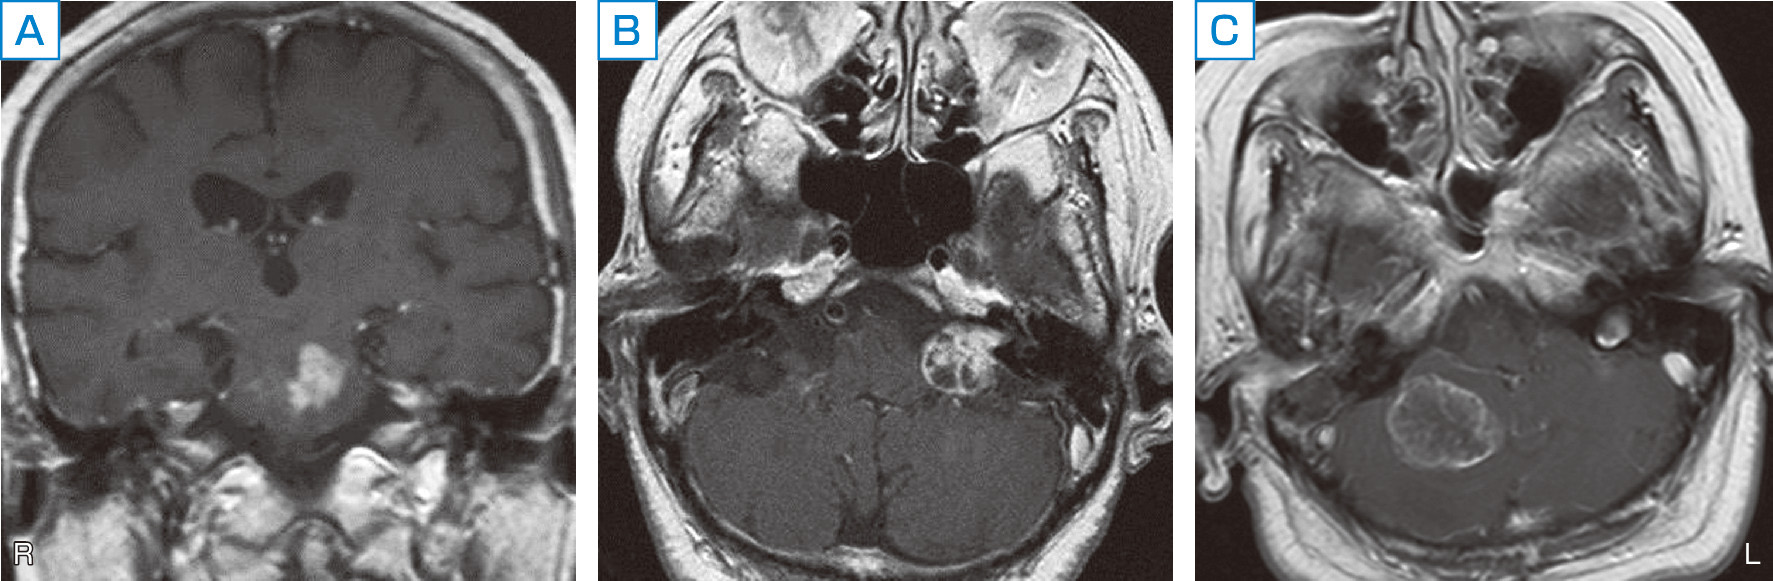 ⓔ図18-3-8　脳腫瘍によるめまい 脳幹や小脳に腫瘍ができればめまいを生じる．図は，71歳女性の橋に生じた神経膠腫 (A)，76歳女性の聴神経鞘腫 (B)，59歳女性の大腸癌の小脳転移 (C) のガドリニウム増強T1強調MRI画像を示している．